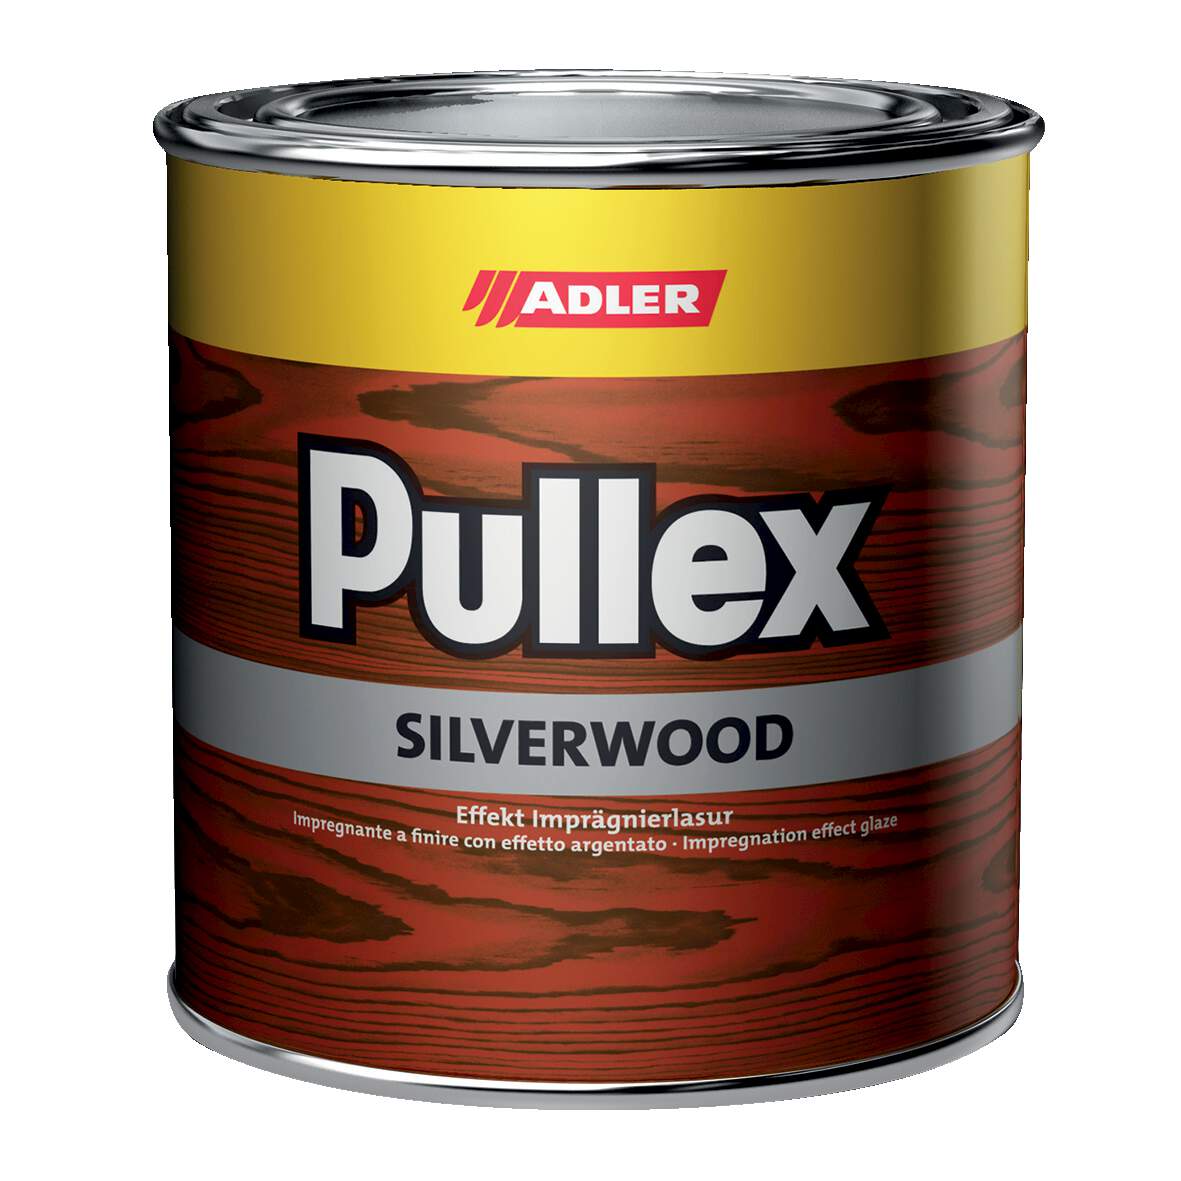 1197810 - Pullex Silverwood Fichte 750ml hell